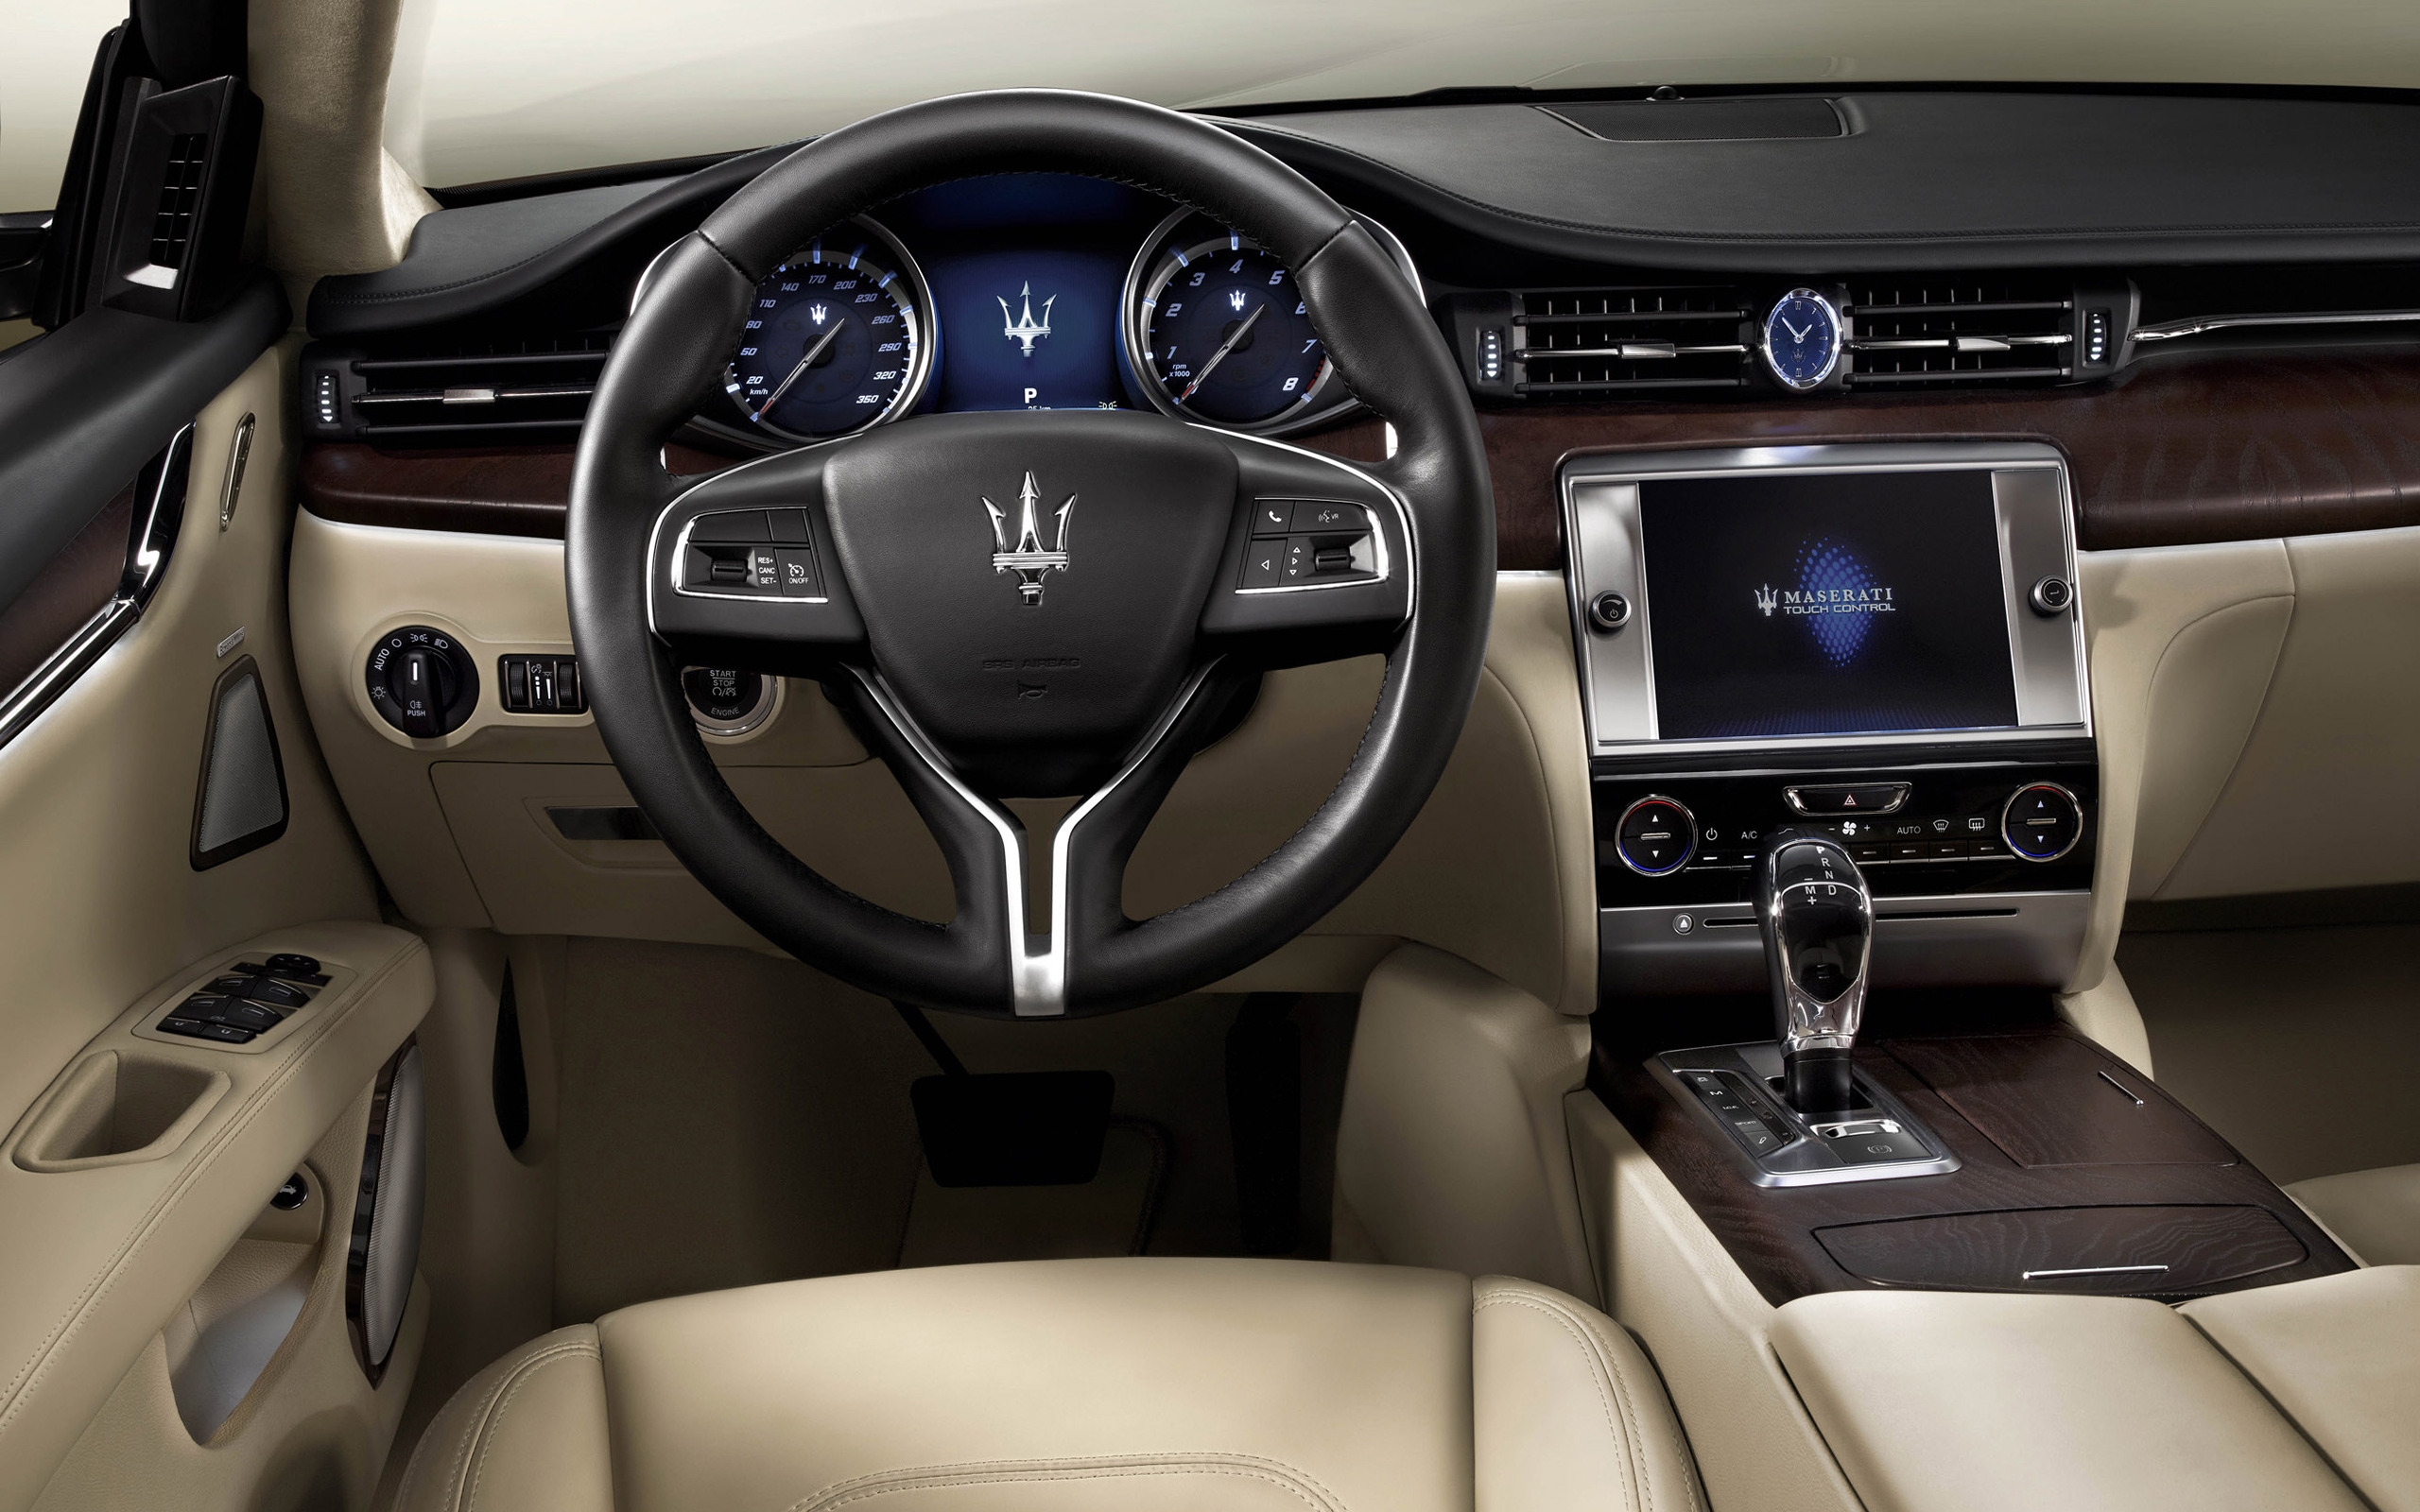 Interior of Maserati Quattroporte for 2560 x 1600 widescreen resolution